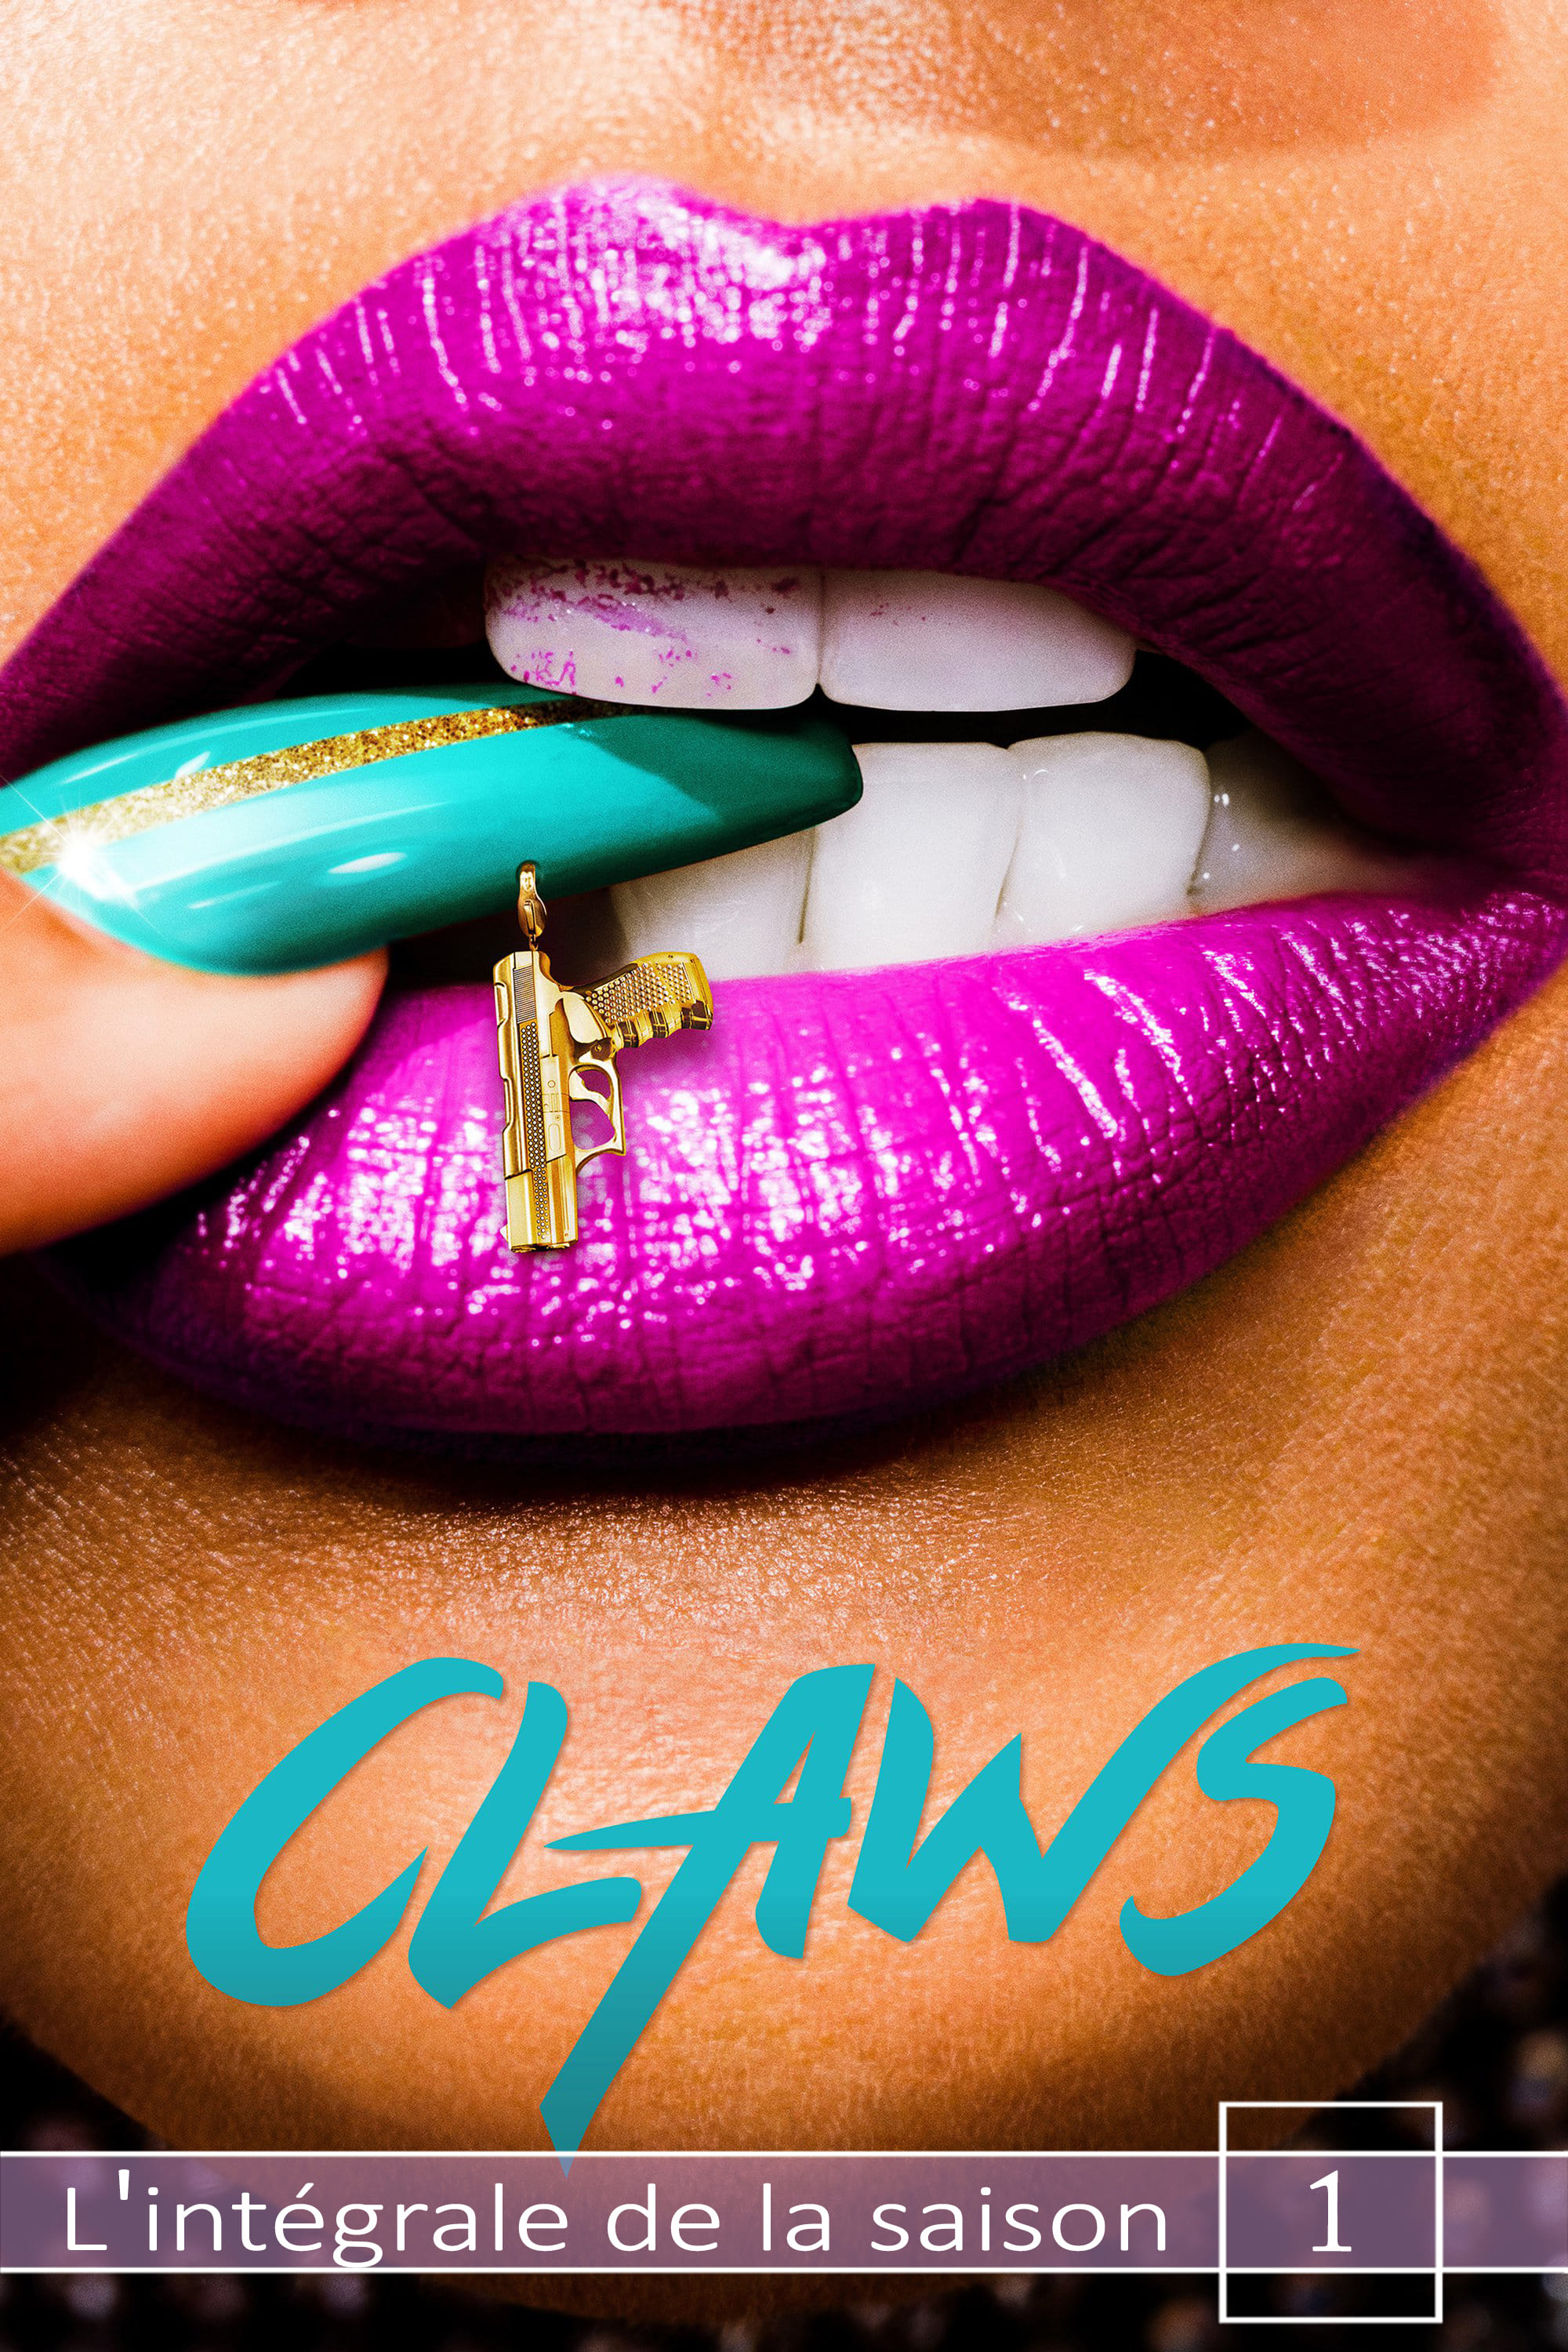 Claws - Saison 1 wiflix